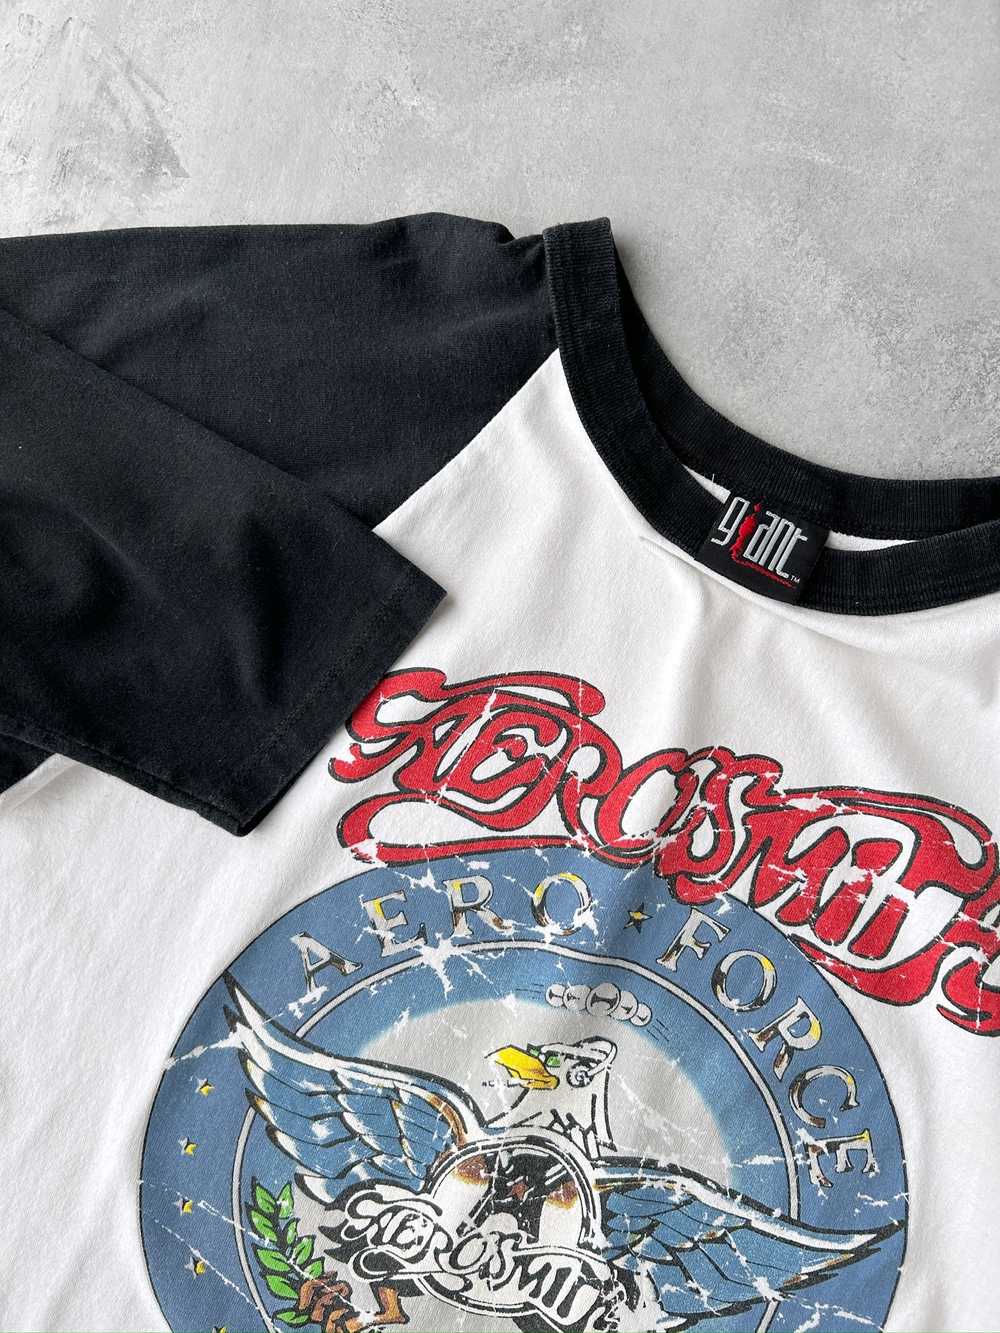 Aerosmith Baseball T-Shirt '97 - Large - image 2